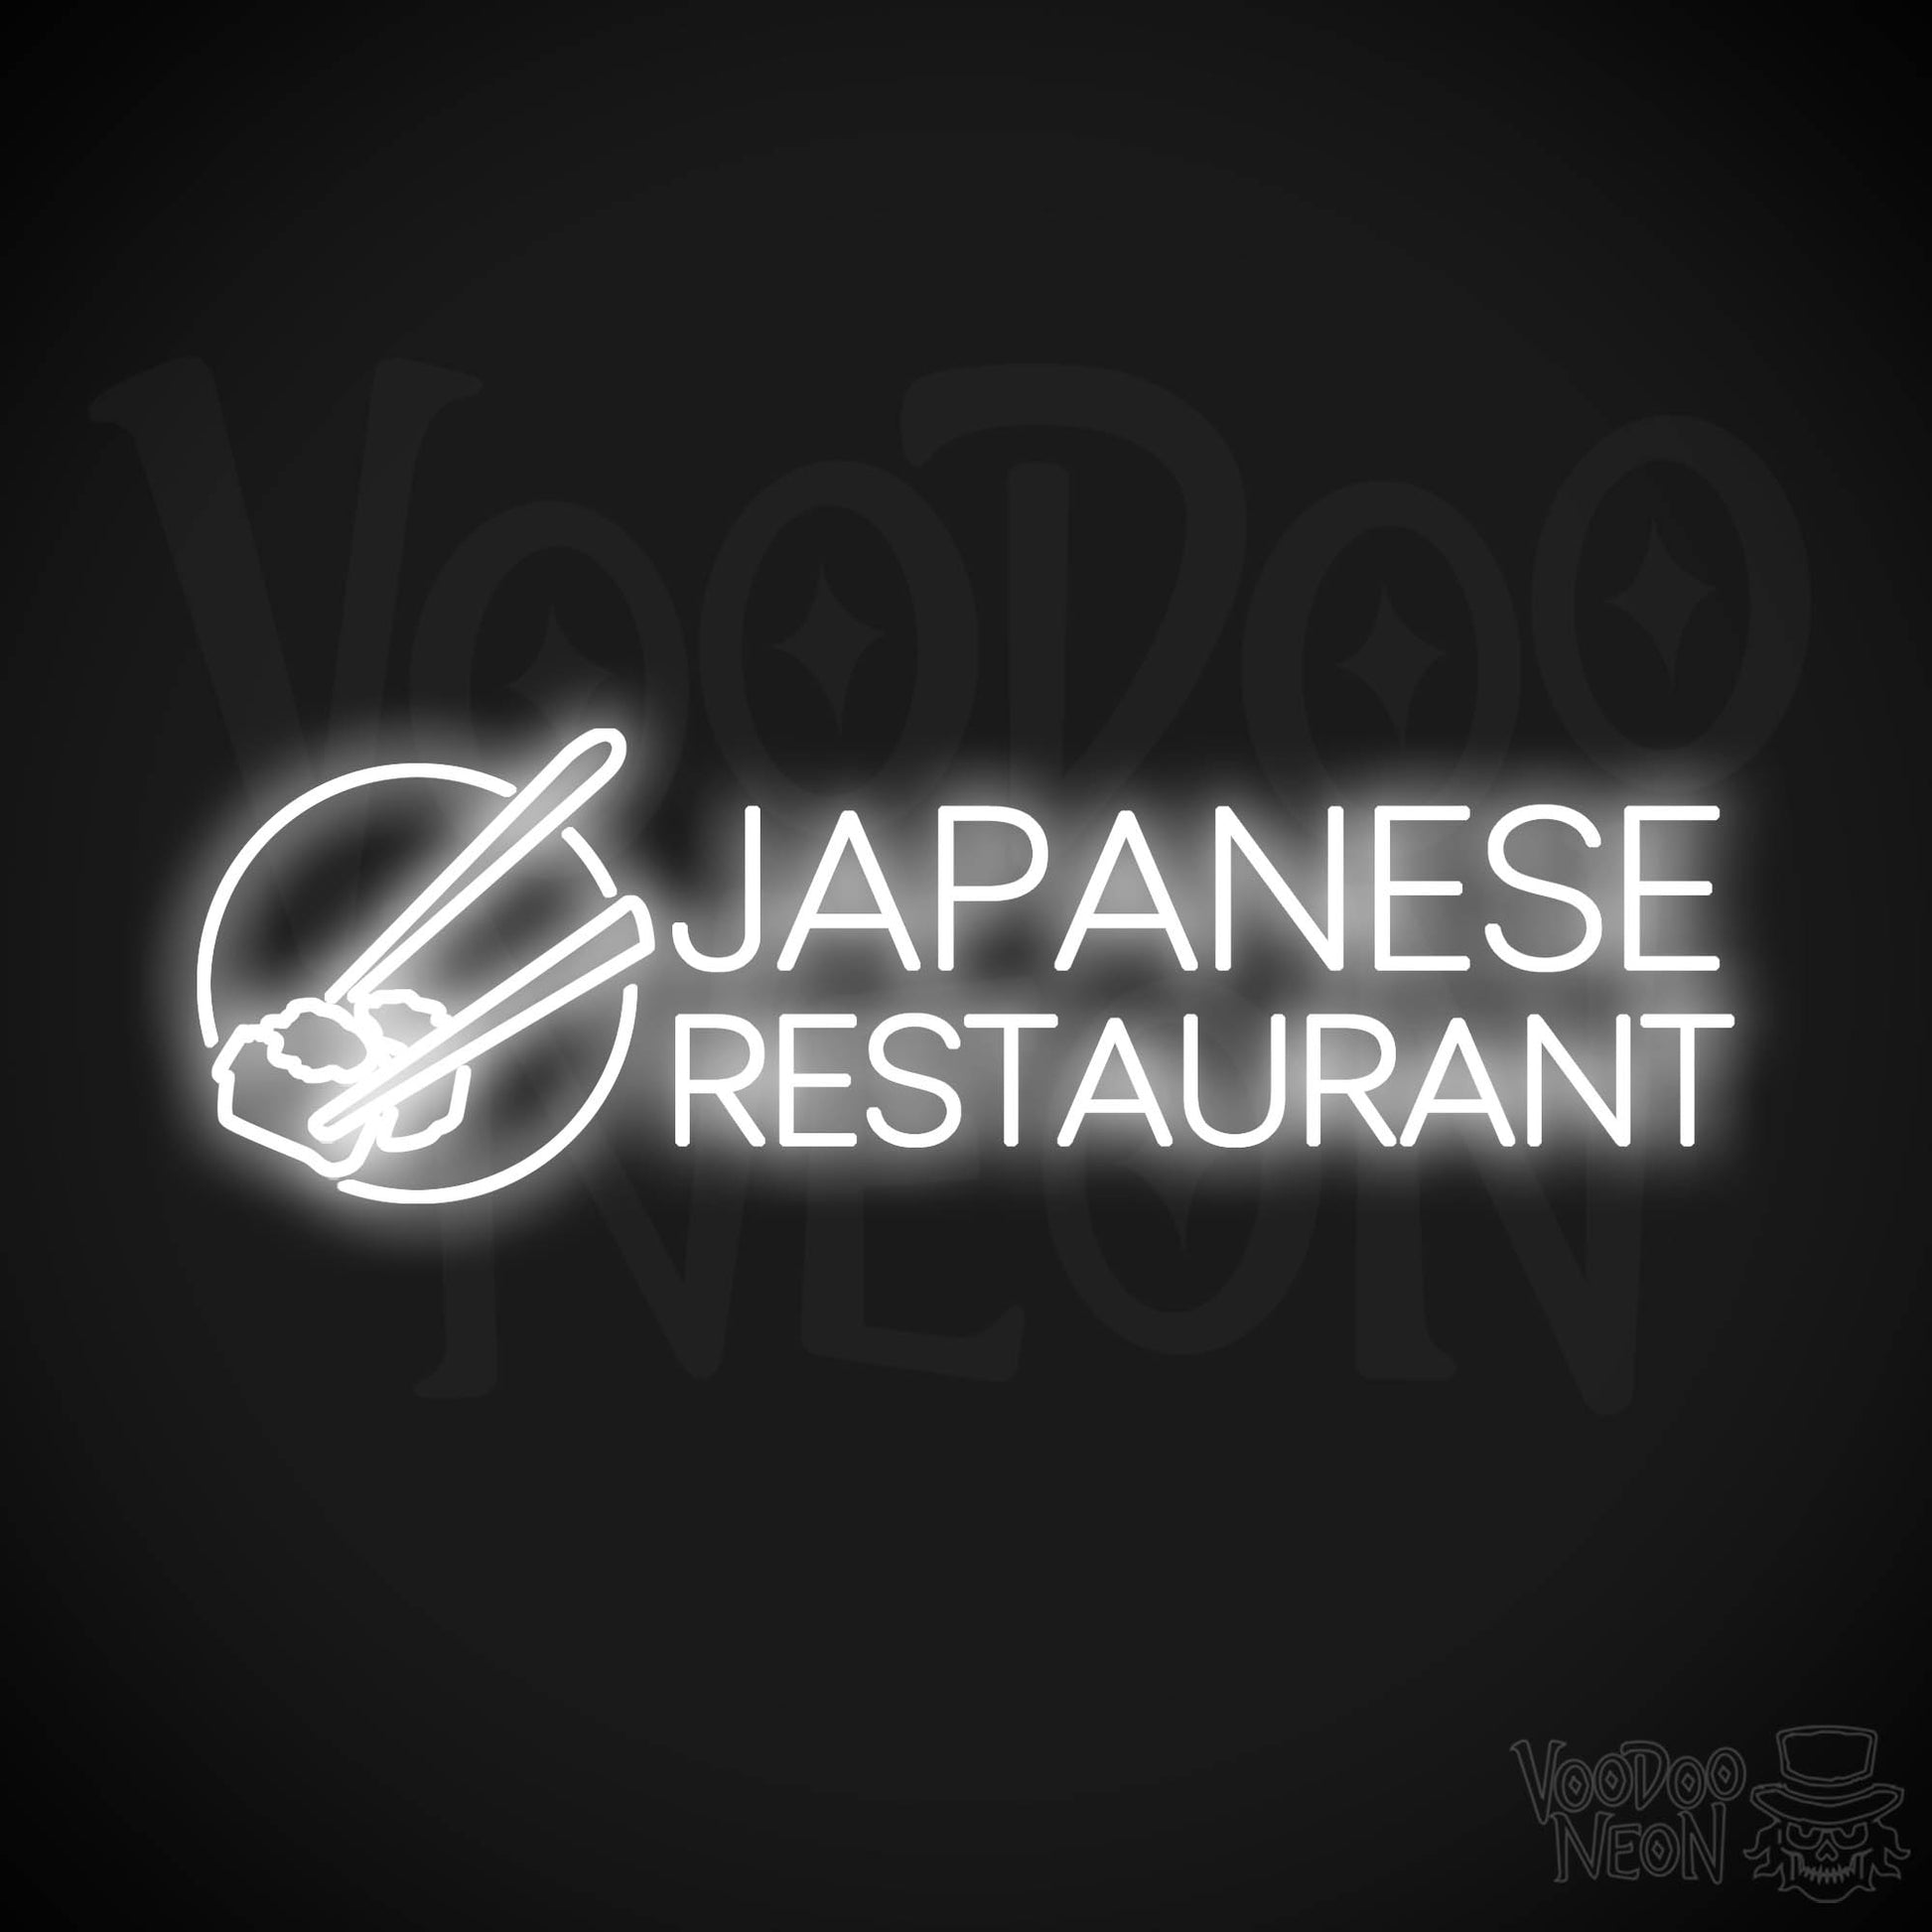 Japanese Restaurant LED Neon - White